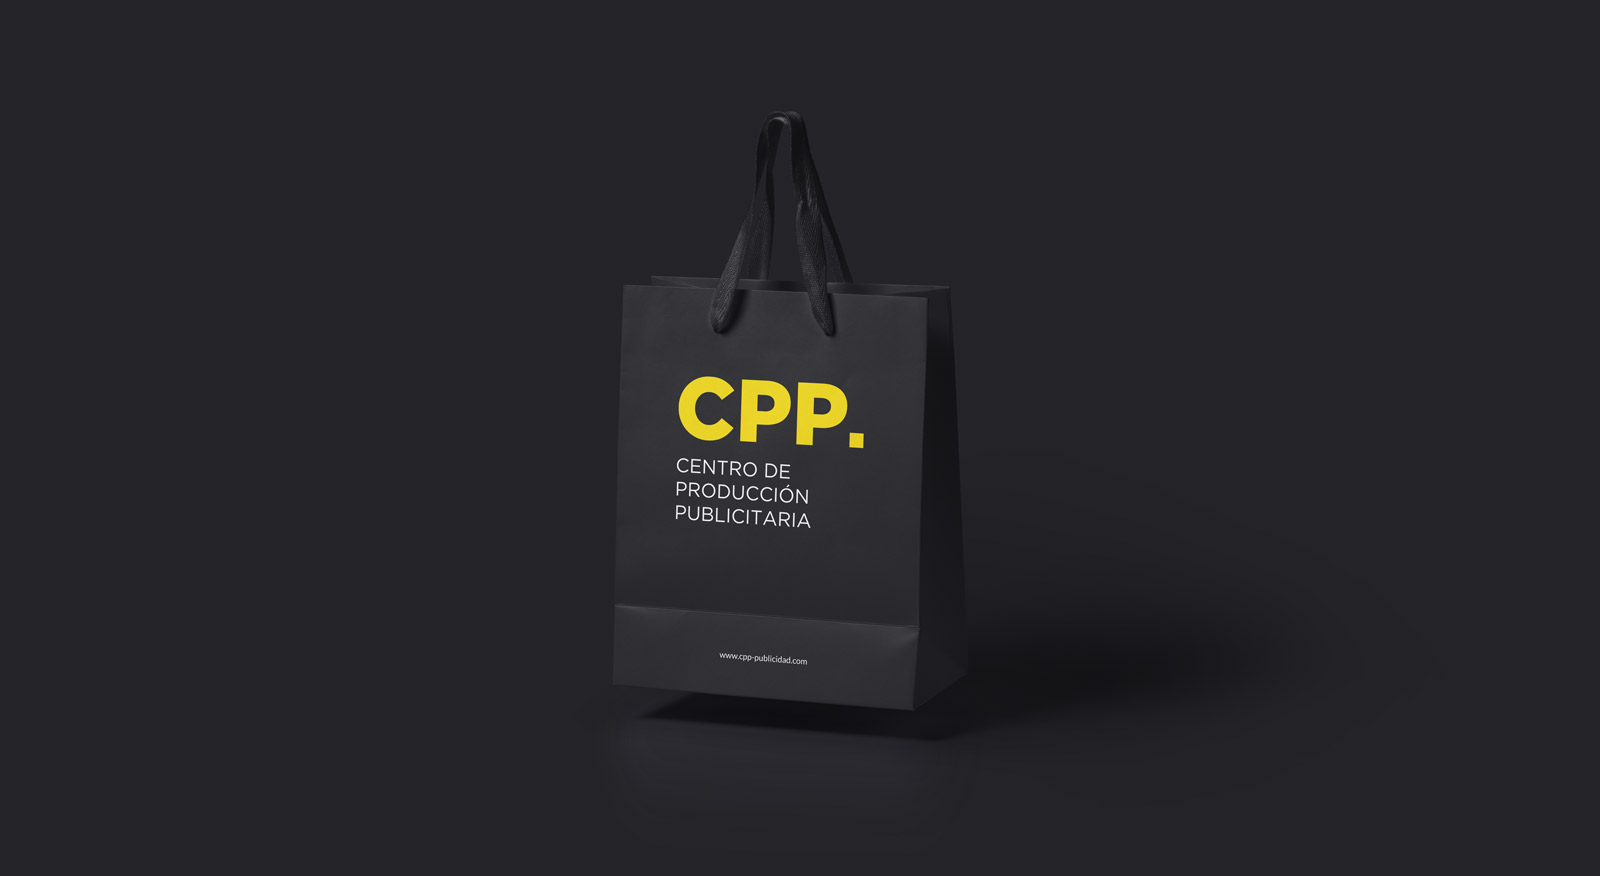 Diseño gráfico y creativo de restyling de logo y branding para marca de agencia de publicidad CPP